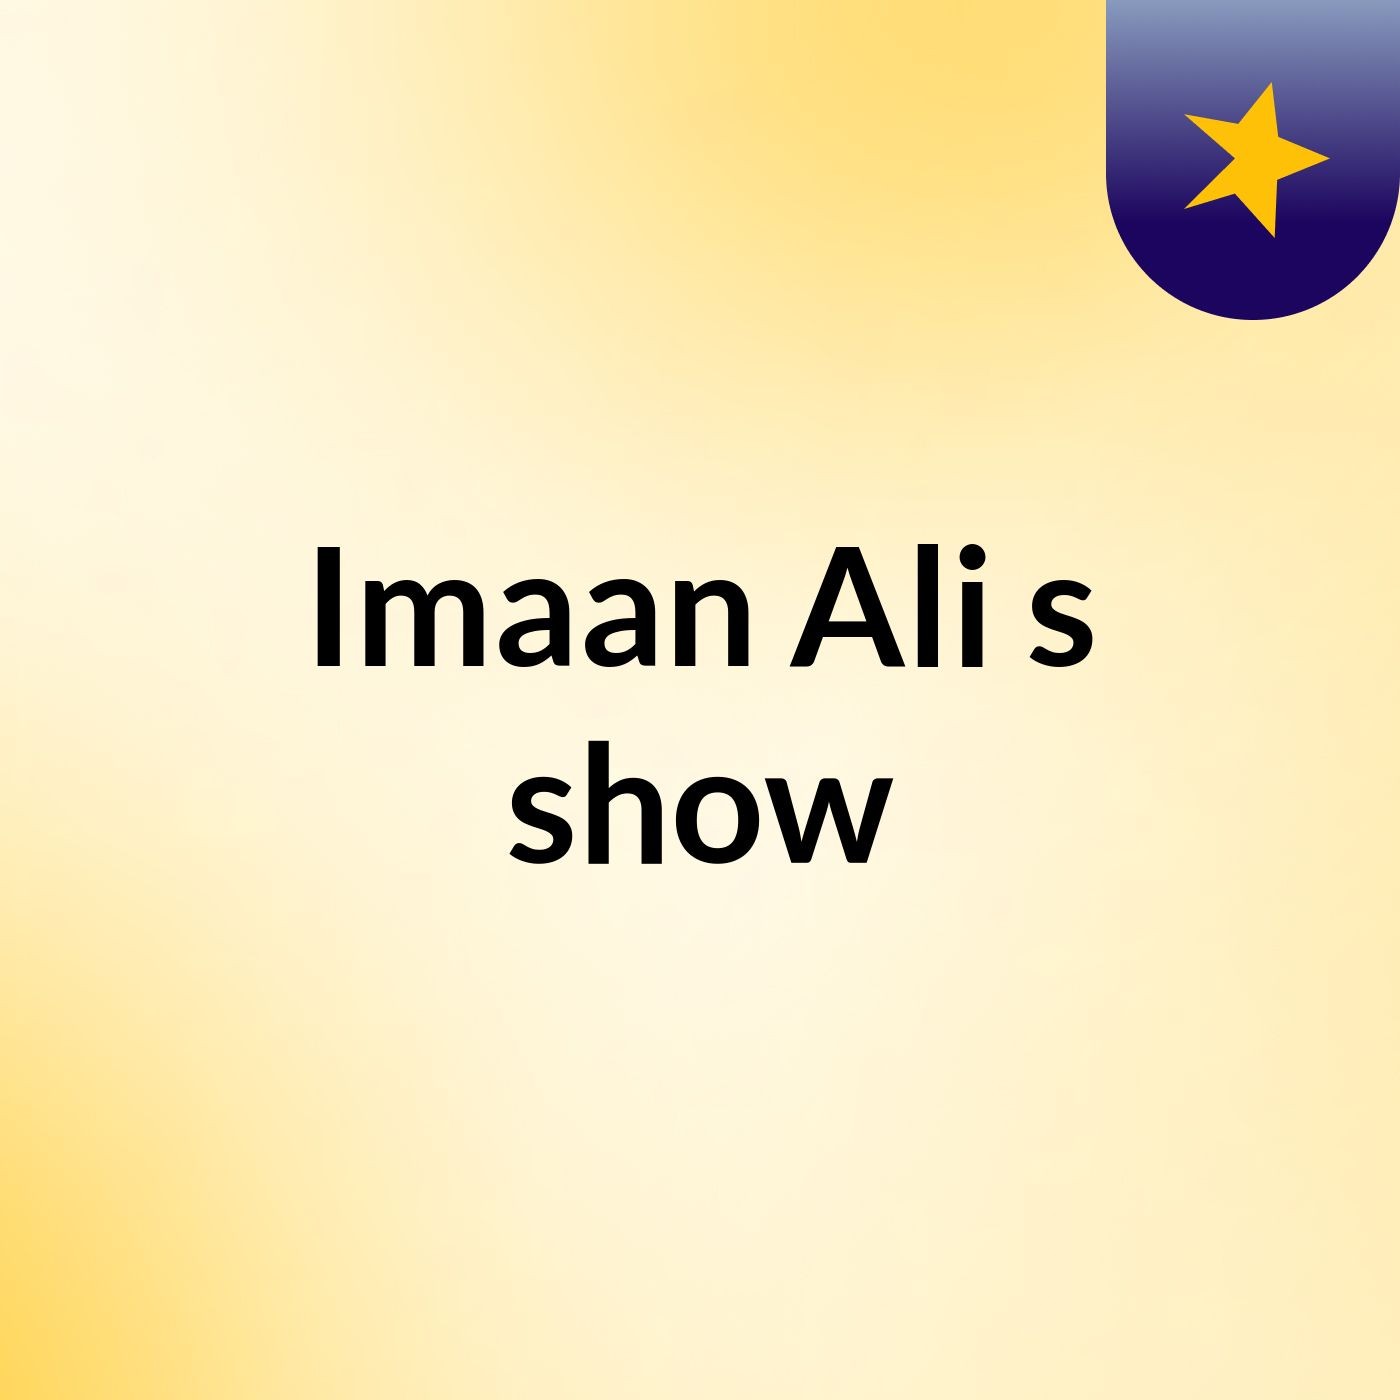 Episode 6 - Imaan Ali's show